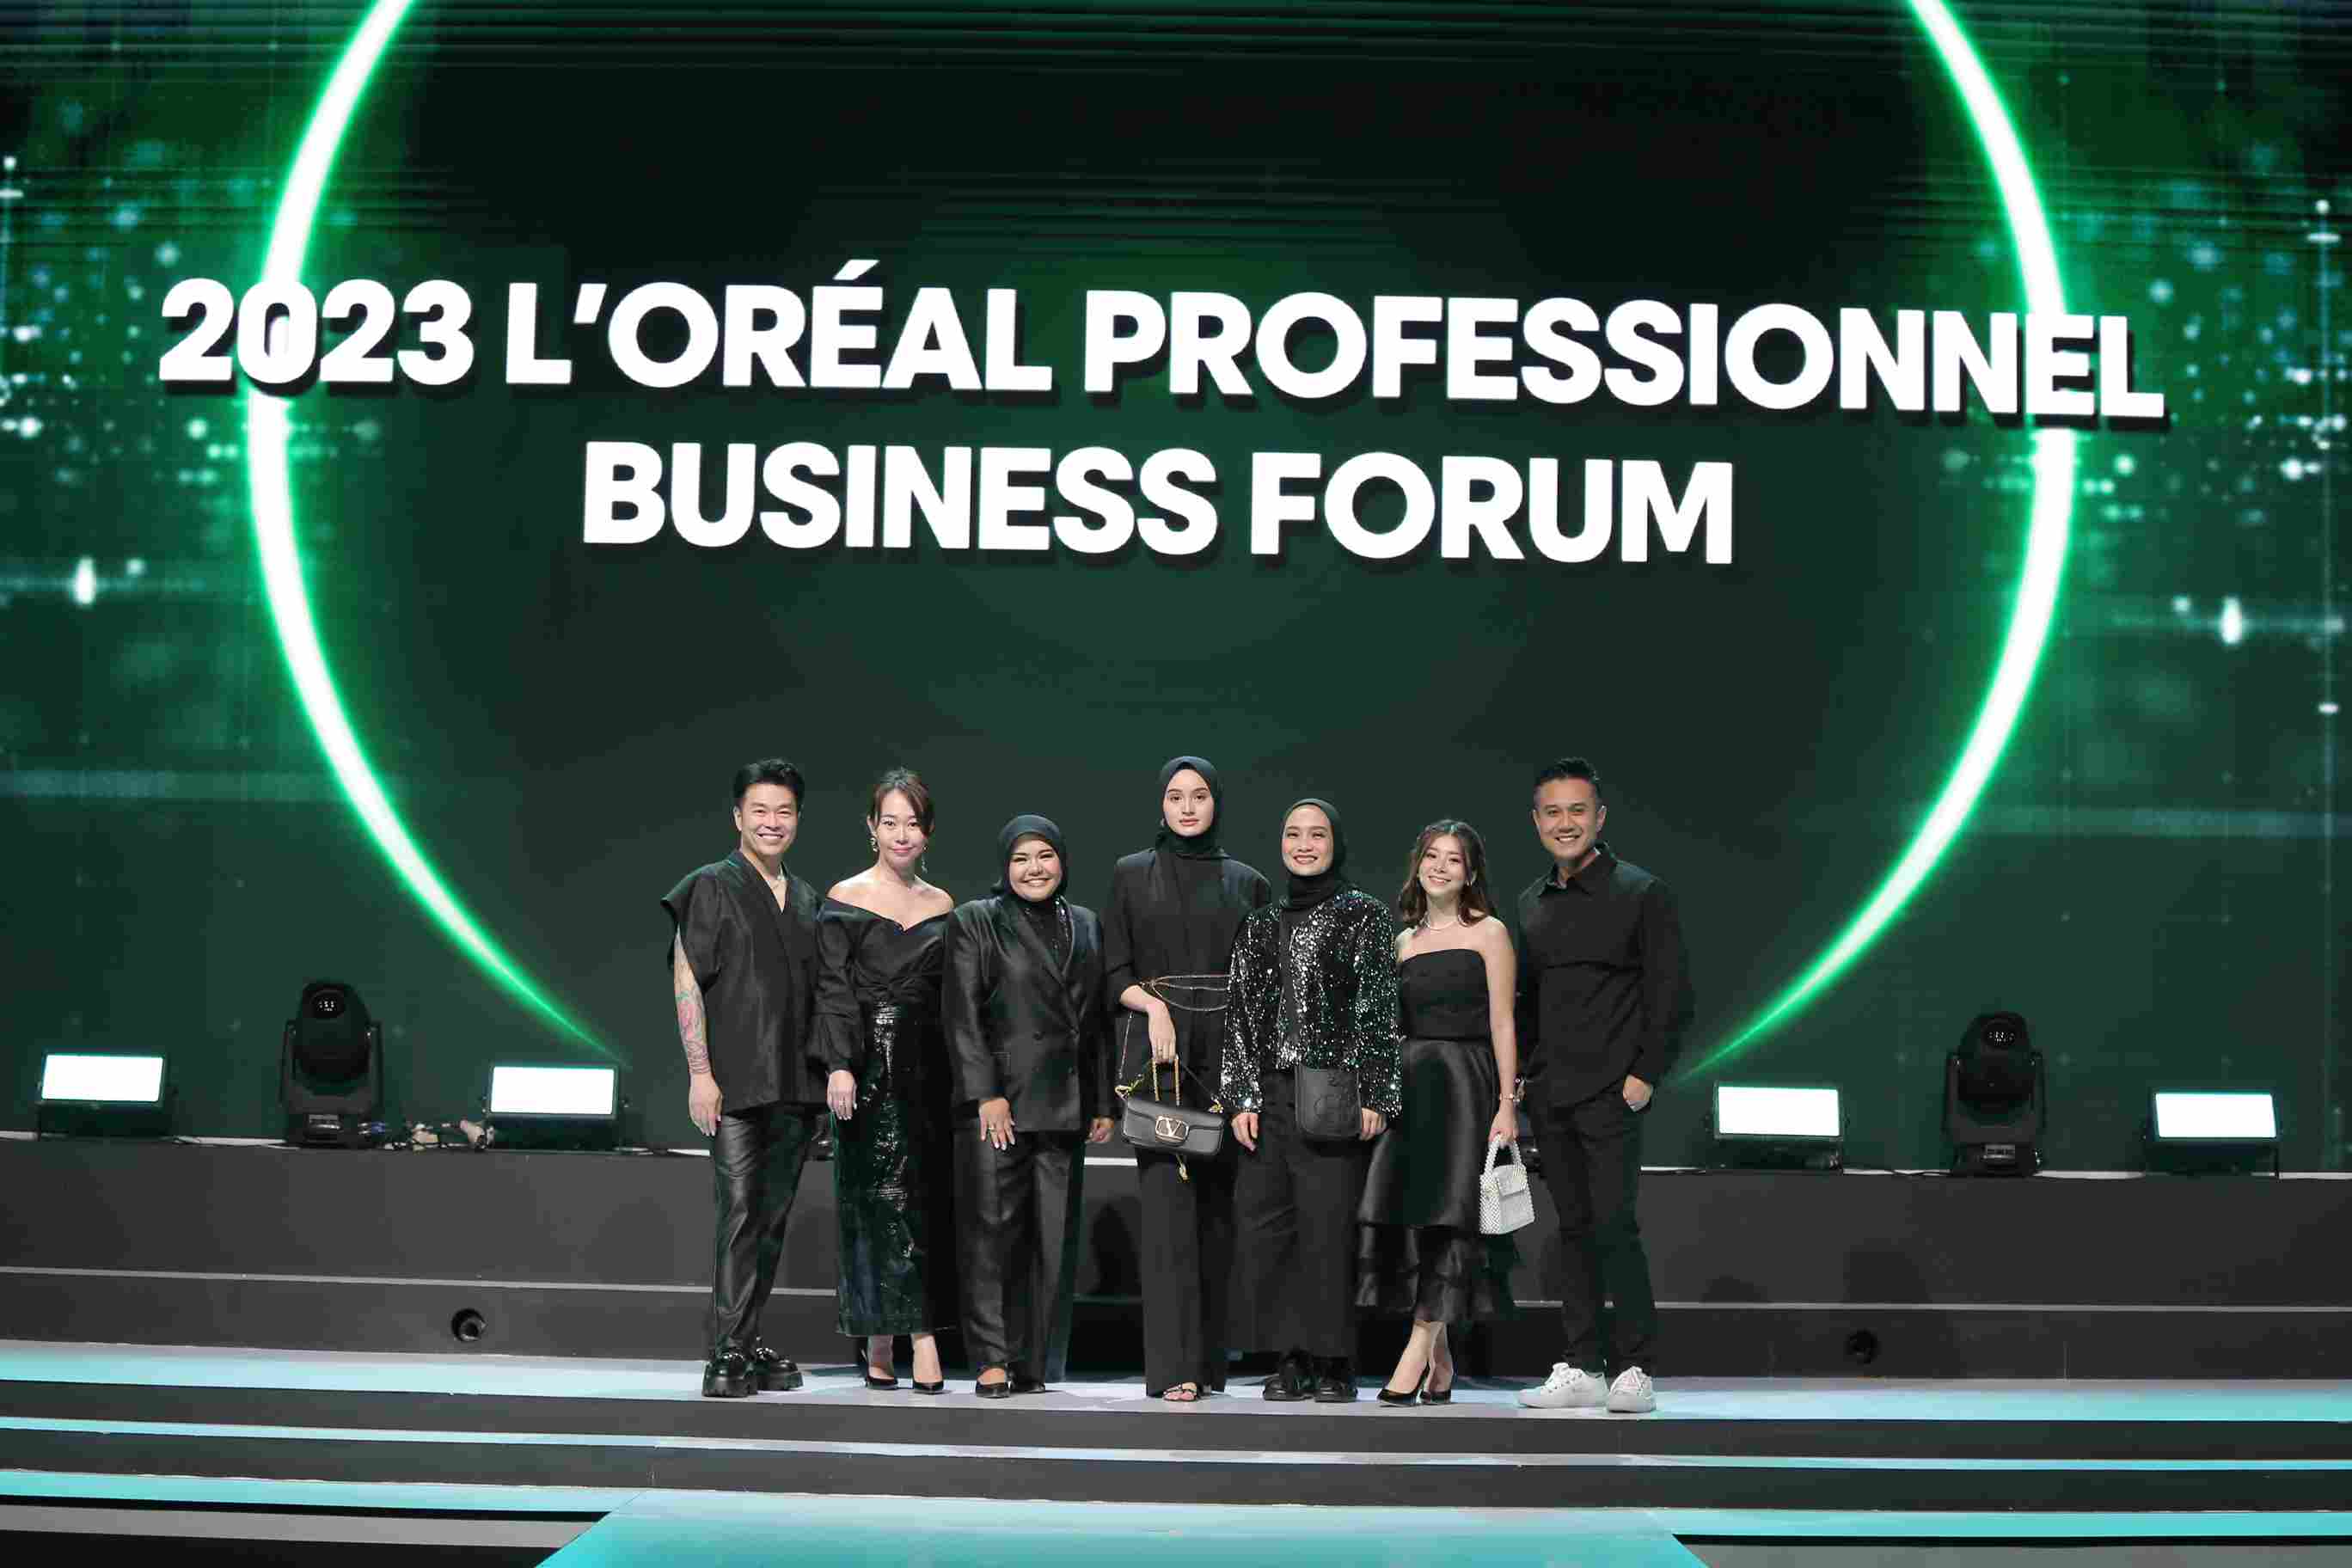 L’Oréal Profesionnel. L’Oréal Profesionnel Business Forum 2023.